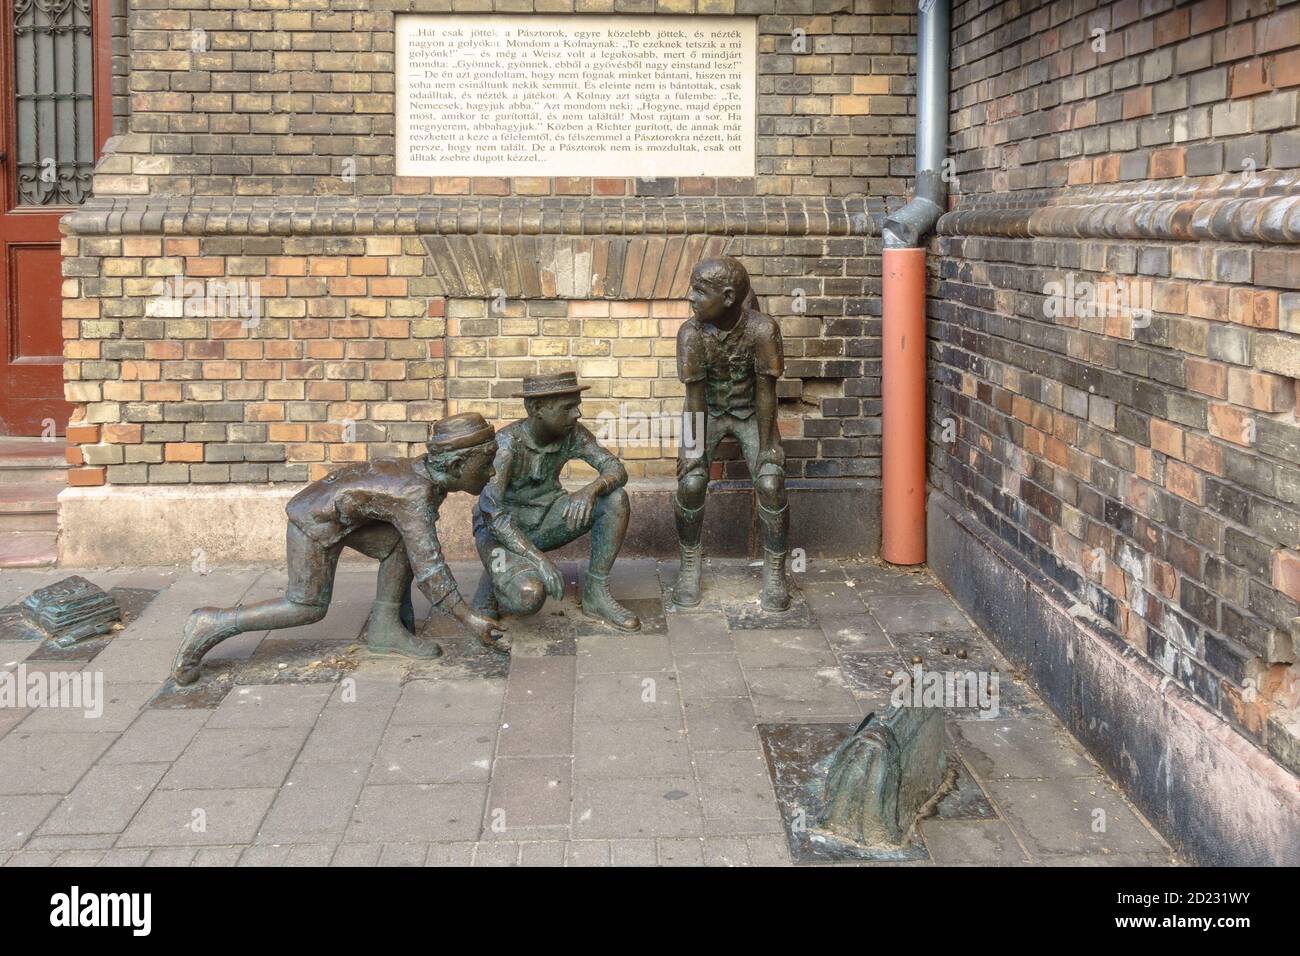 Un groupe de statues représentant les Paul Street Boys (PAL utcai fiuk) Du roman de Ference Molnar à Budapest Banque D'Images